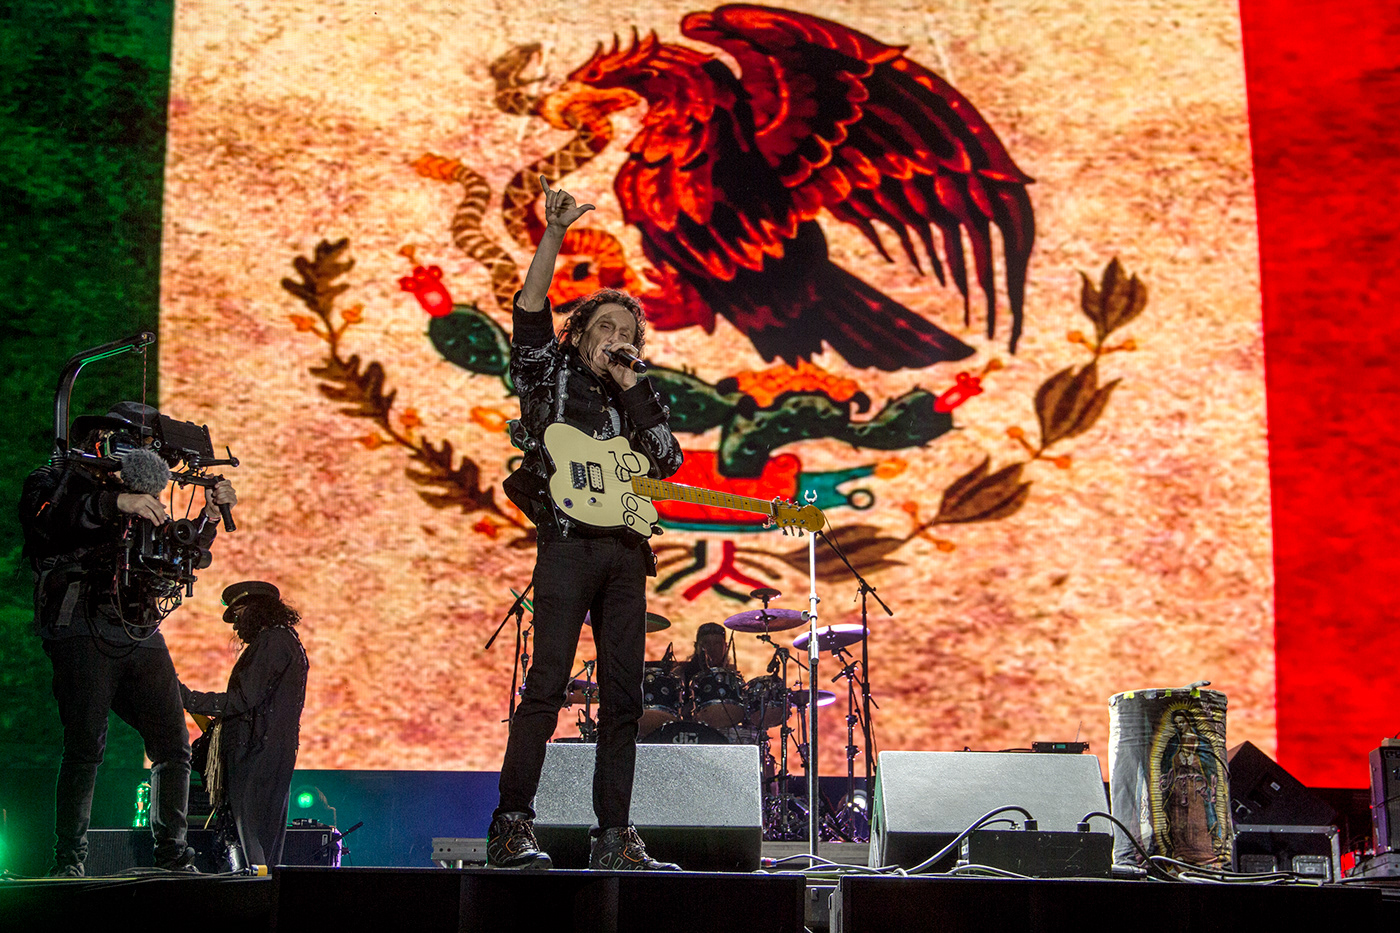 el Tri vive latino alex lora Vive Latino 2019 mexico fotografo de conciertos concierto CDMX Ciudad de México